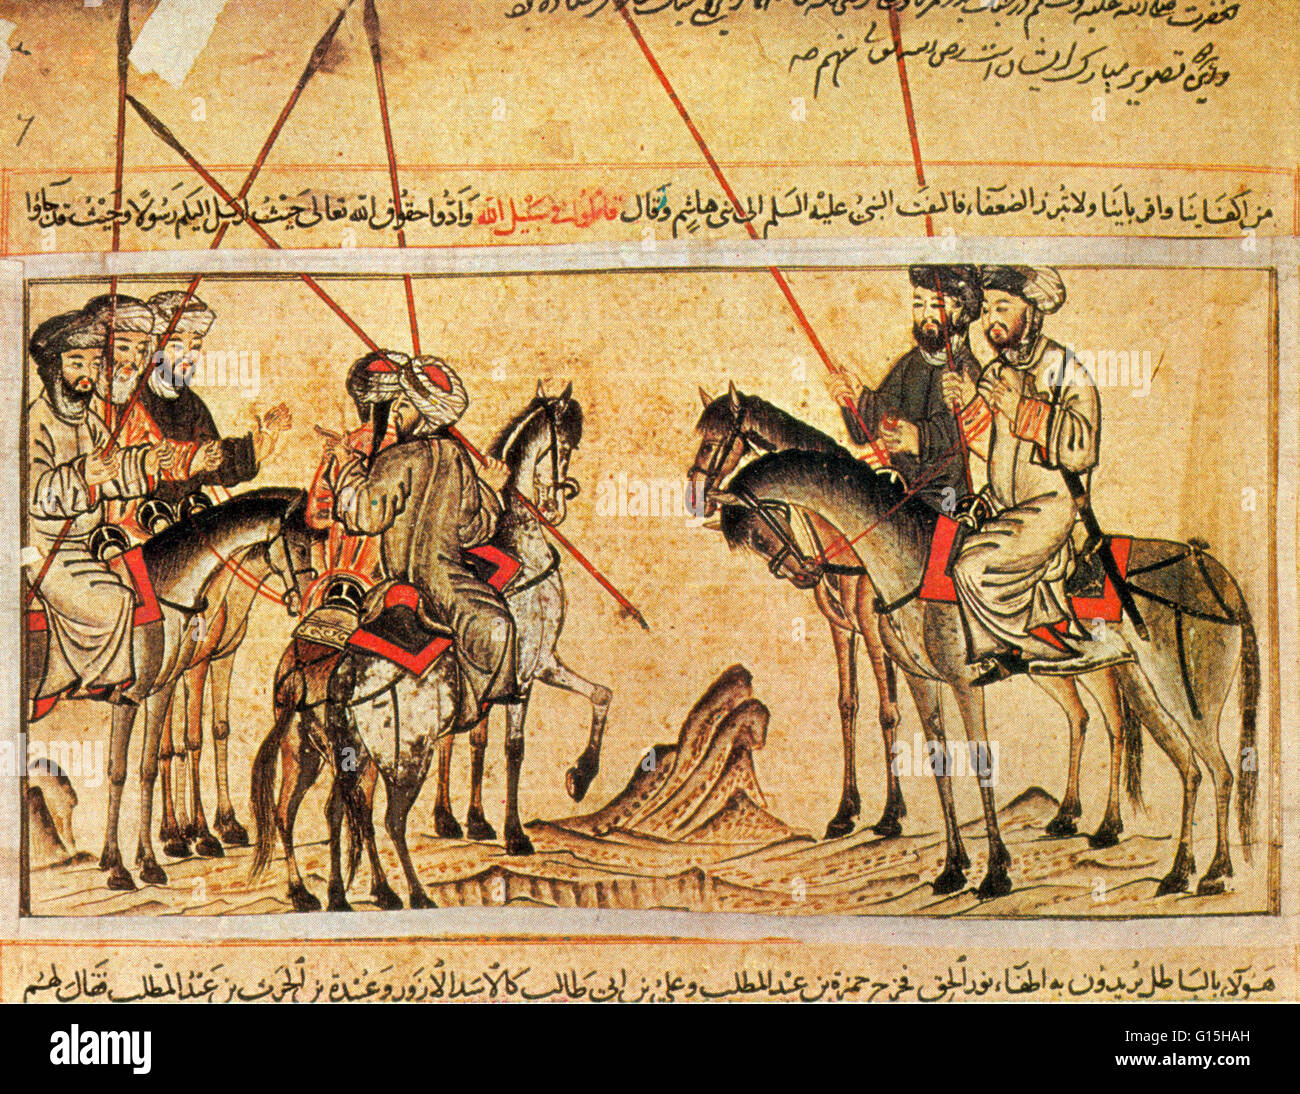 El Jami al-Tawarikh (Historia Universal) es un trabajo de la literatura iraní y la historia escrita por Rashid-al-Din Hamadani al inicio del siglo 14. Estas miniaturas se realiza predominantemente en tonos rojos y azules, que están entre las mejores Islámicos tempranos Foto de stock